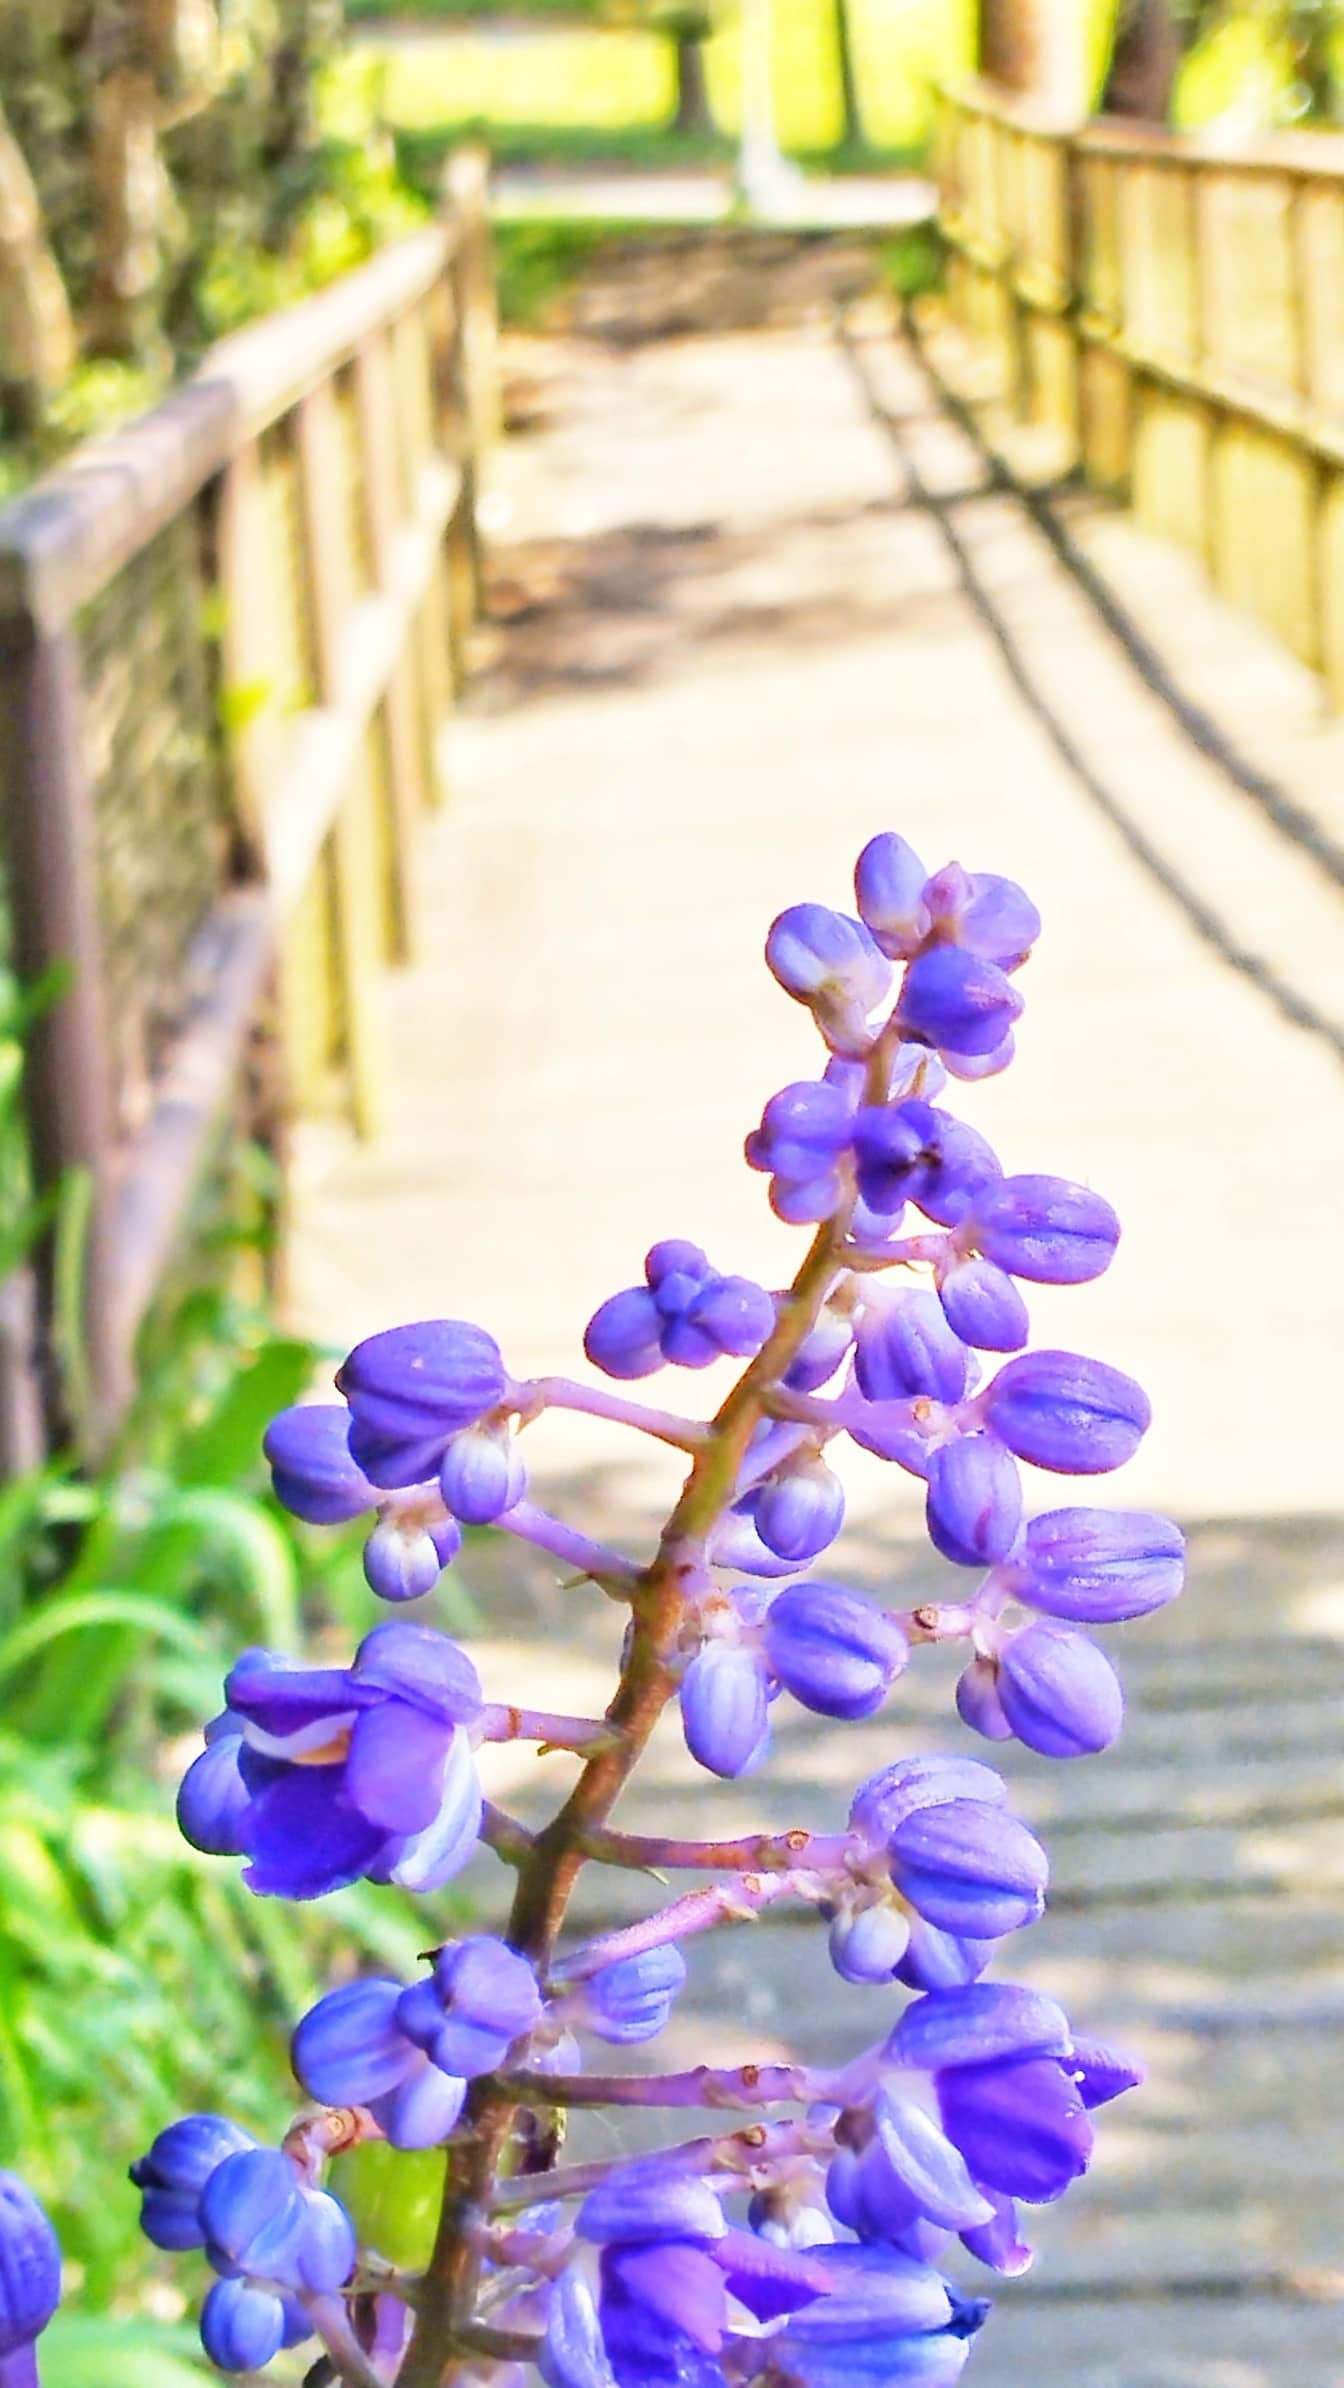 Fioletowo-niebieski kwiat imbiru (Dichorisandra thyrsiflora) w ogrodzie kwiatowym